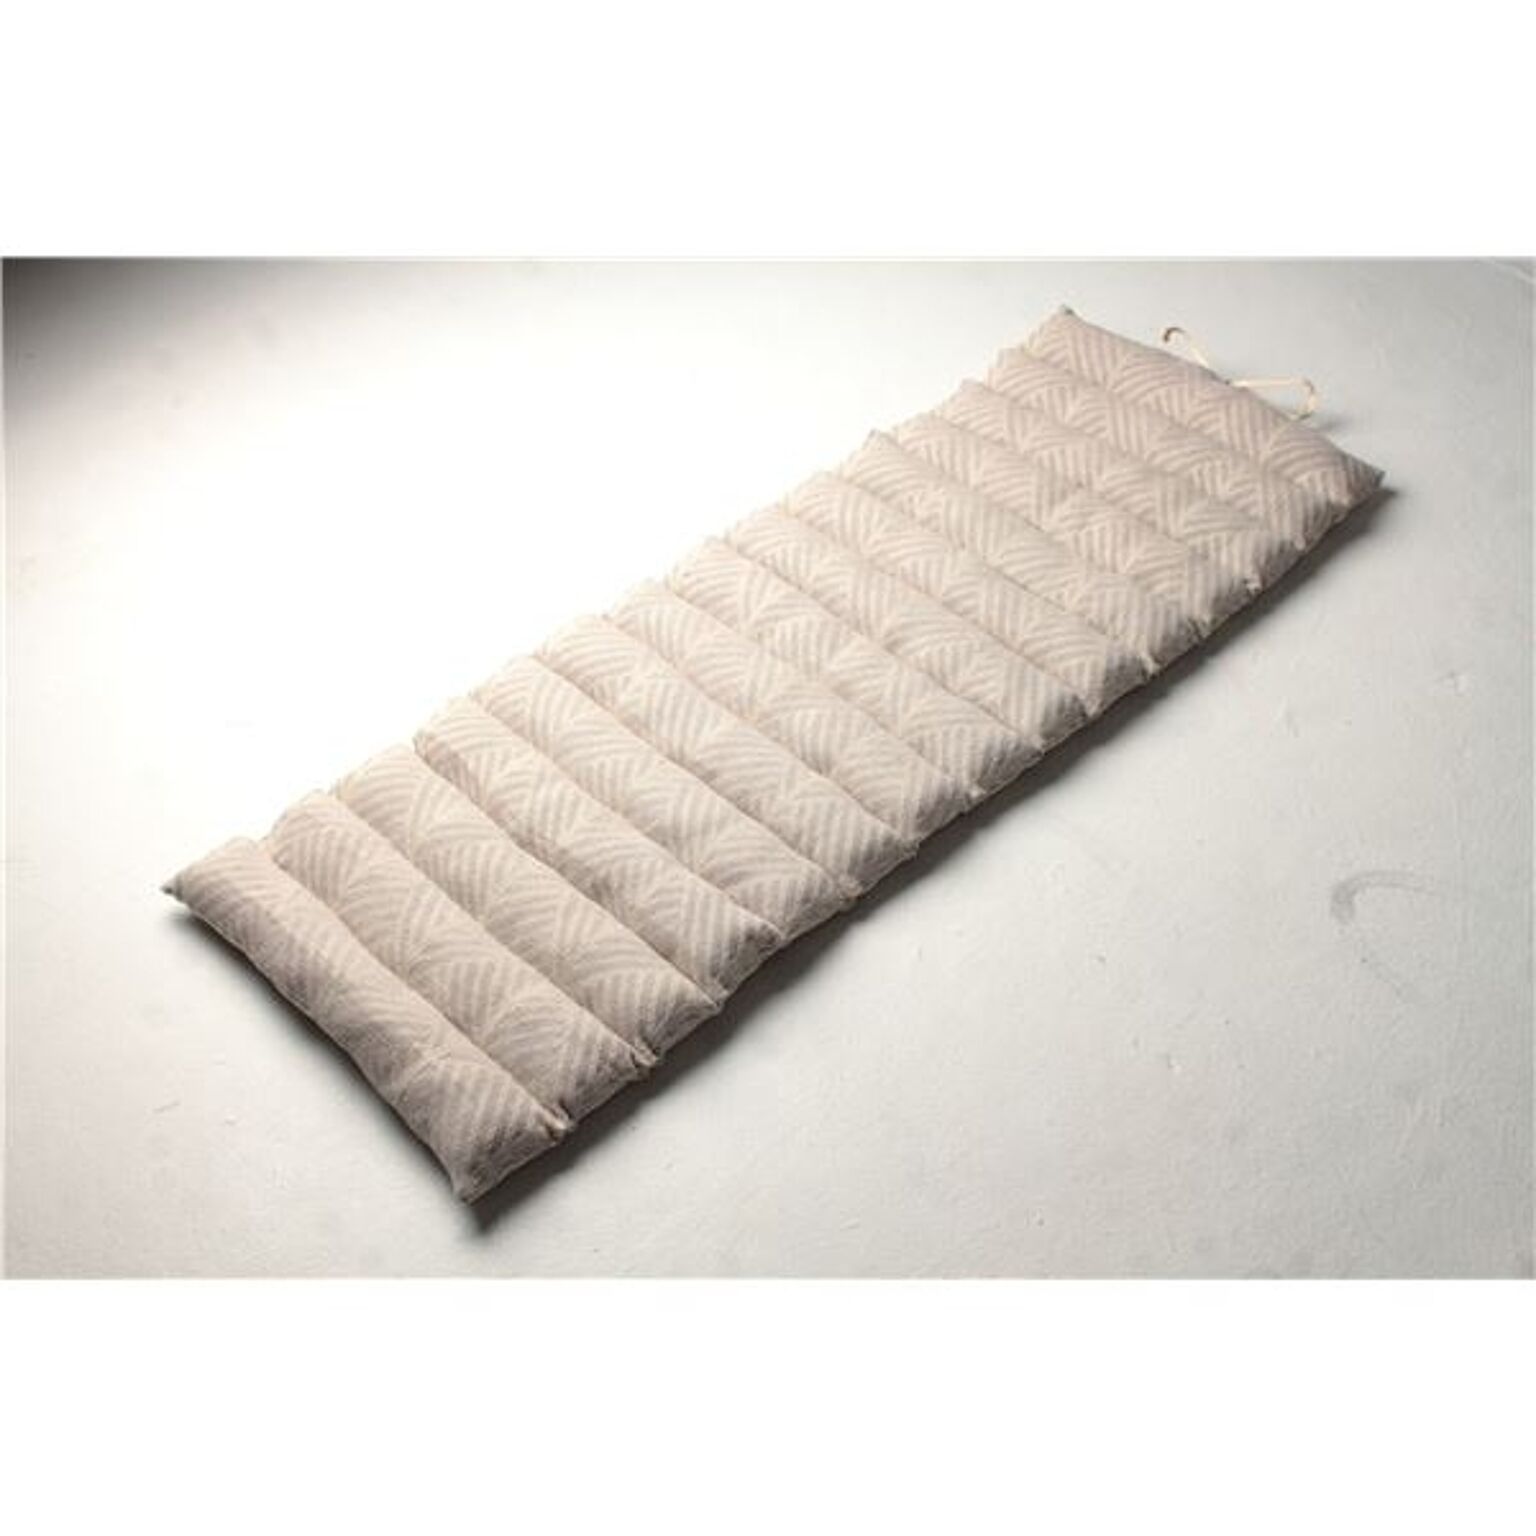 インド綿使用 ロングクッション/座布団 【ホワイト】 43×120cm 『クラック』【代引不可】